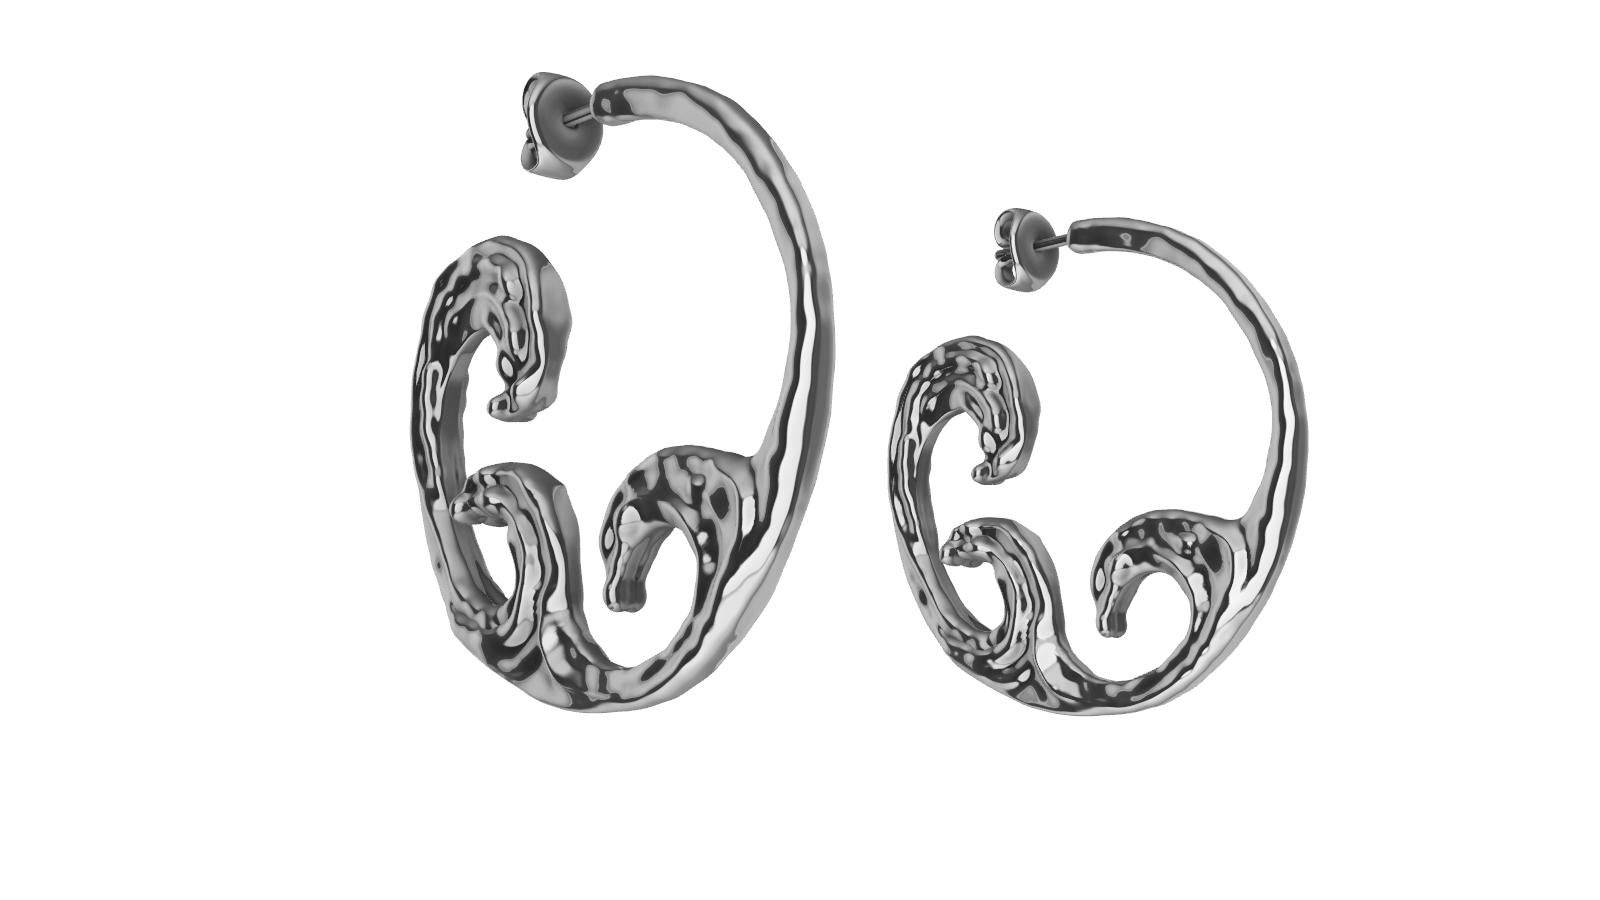 14 Karat White Gold 3 Wave Hoop Earrings, Tiffany designer, Thomas Kurilla accueille la nouvelle collection Light , Water, Mind. 2 hernies discales en 2018, et la découverte de la Cyrothérapie en 2020. Cette passion pour la lumière sur l'océan qui